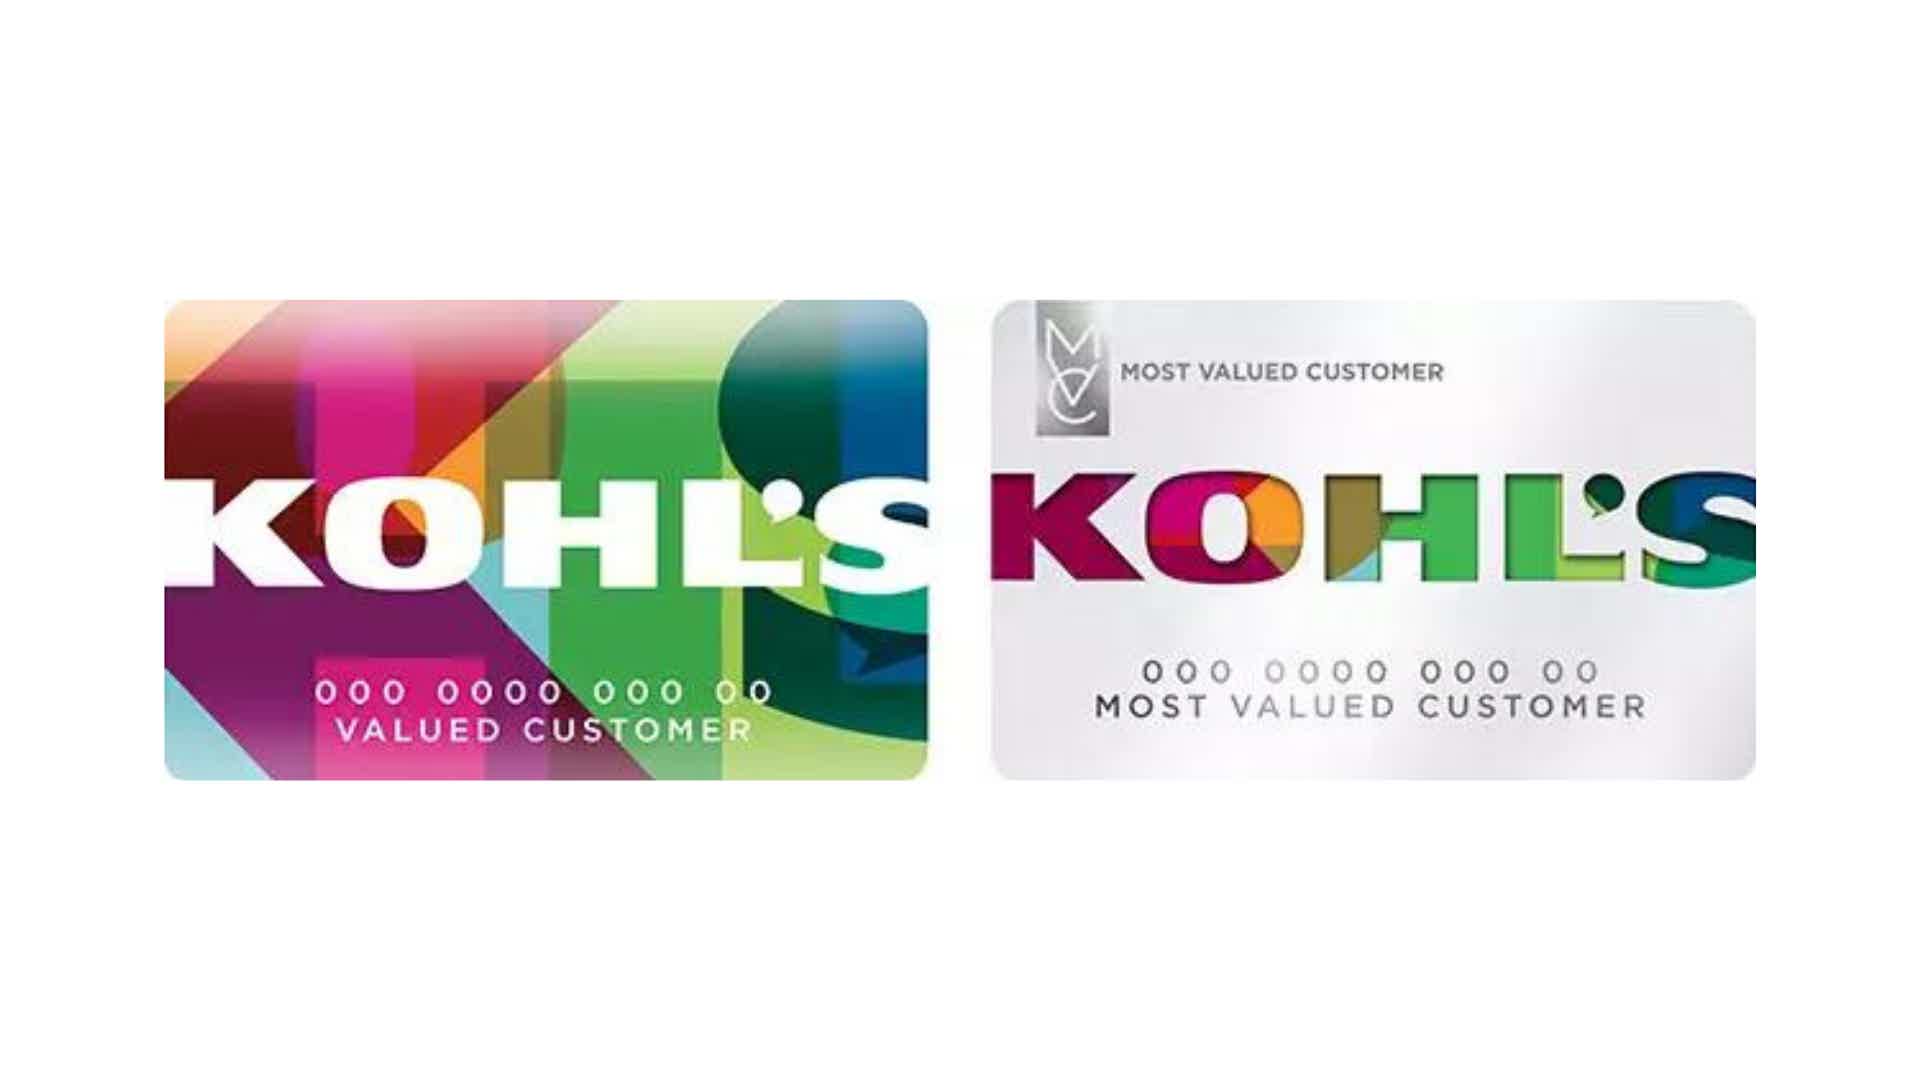 Conheça o cartão das lojas Kohls. Fonte: Kohls.